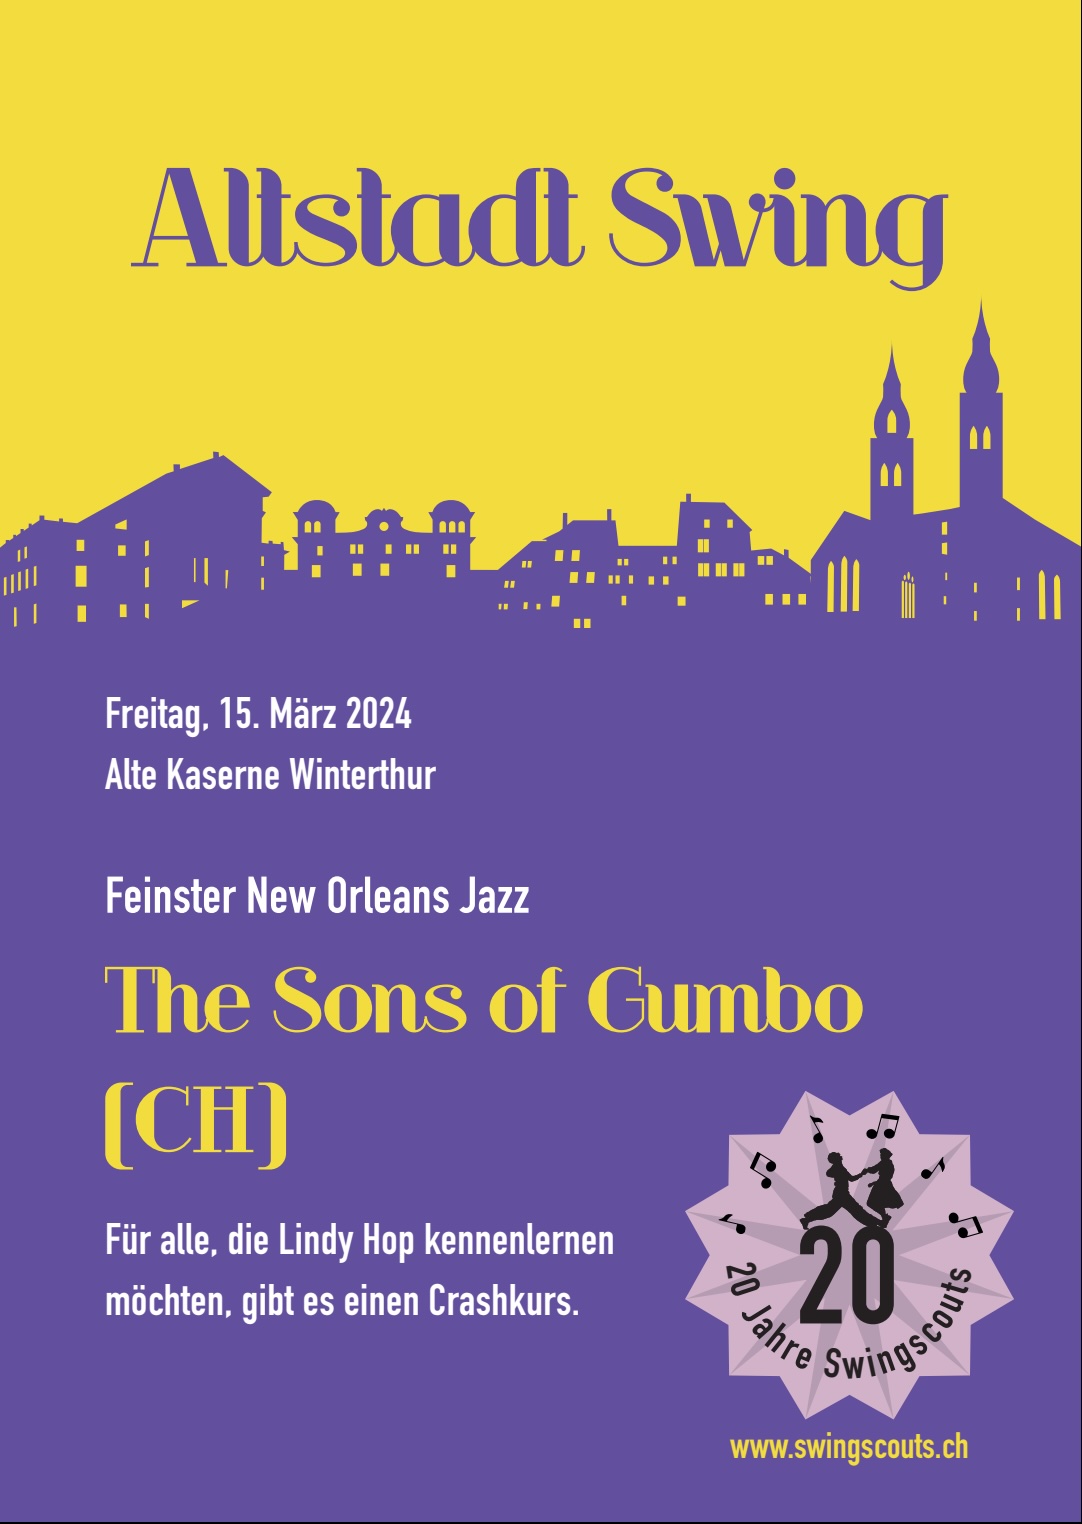 Fr.  15.03.2024 # Altstadt Swing mit the Sons of Gumbo